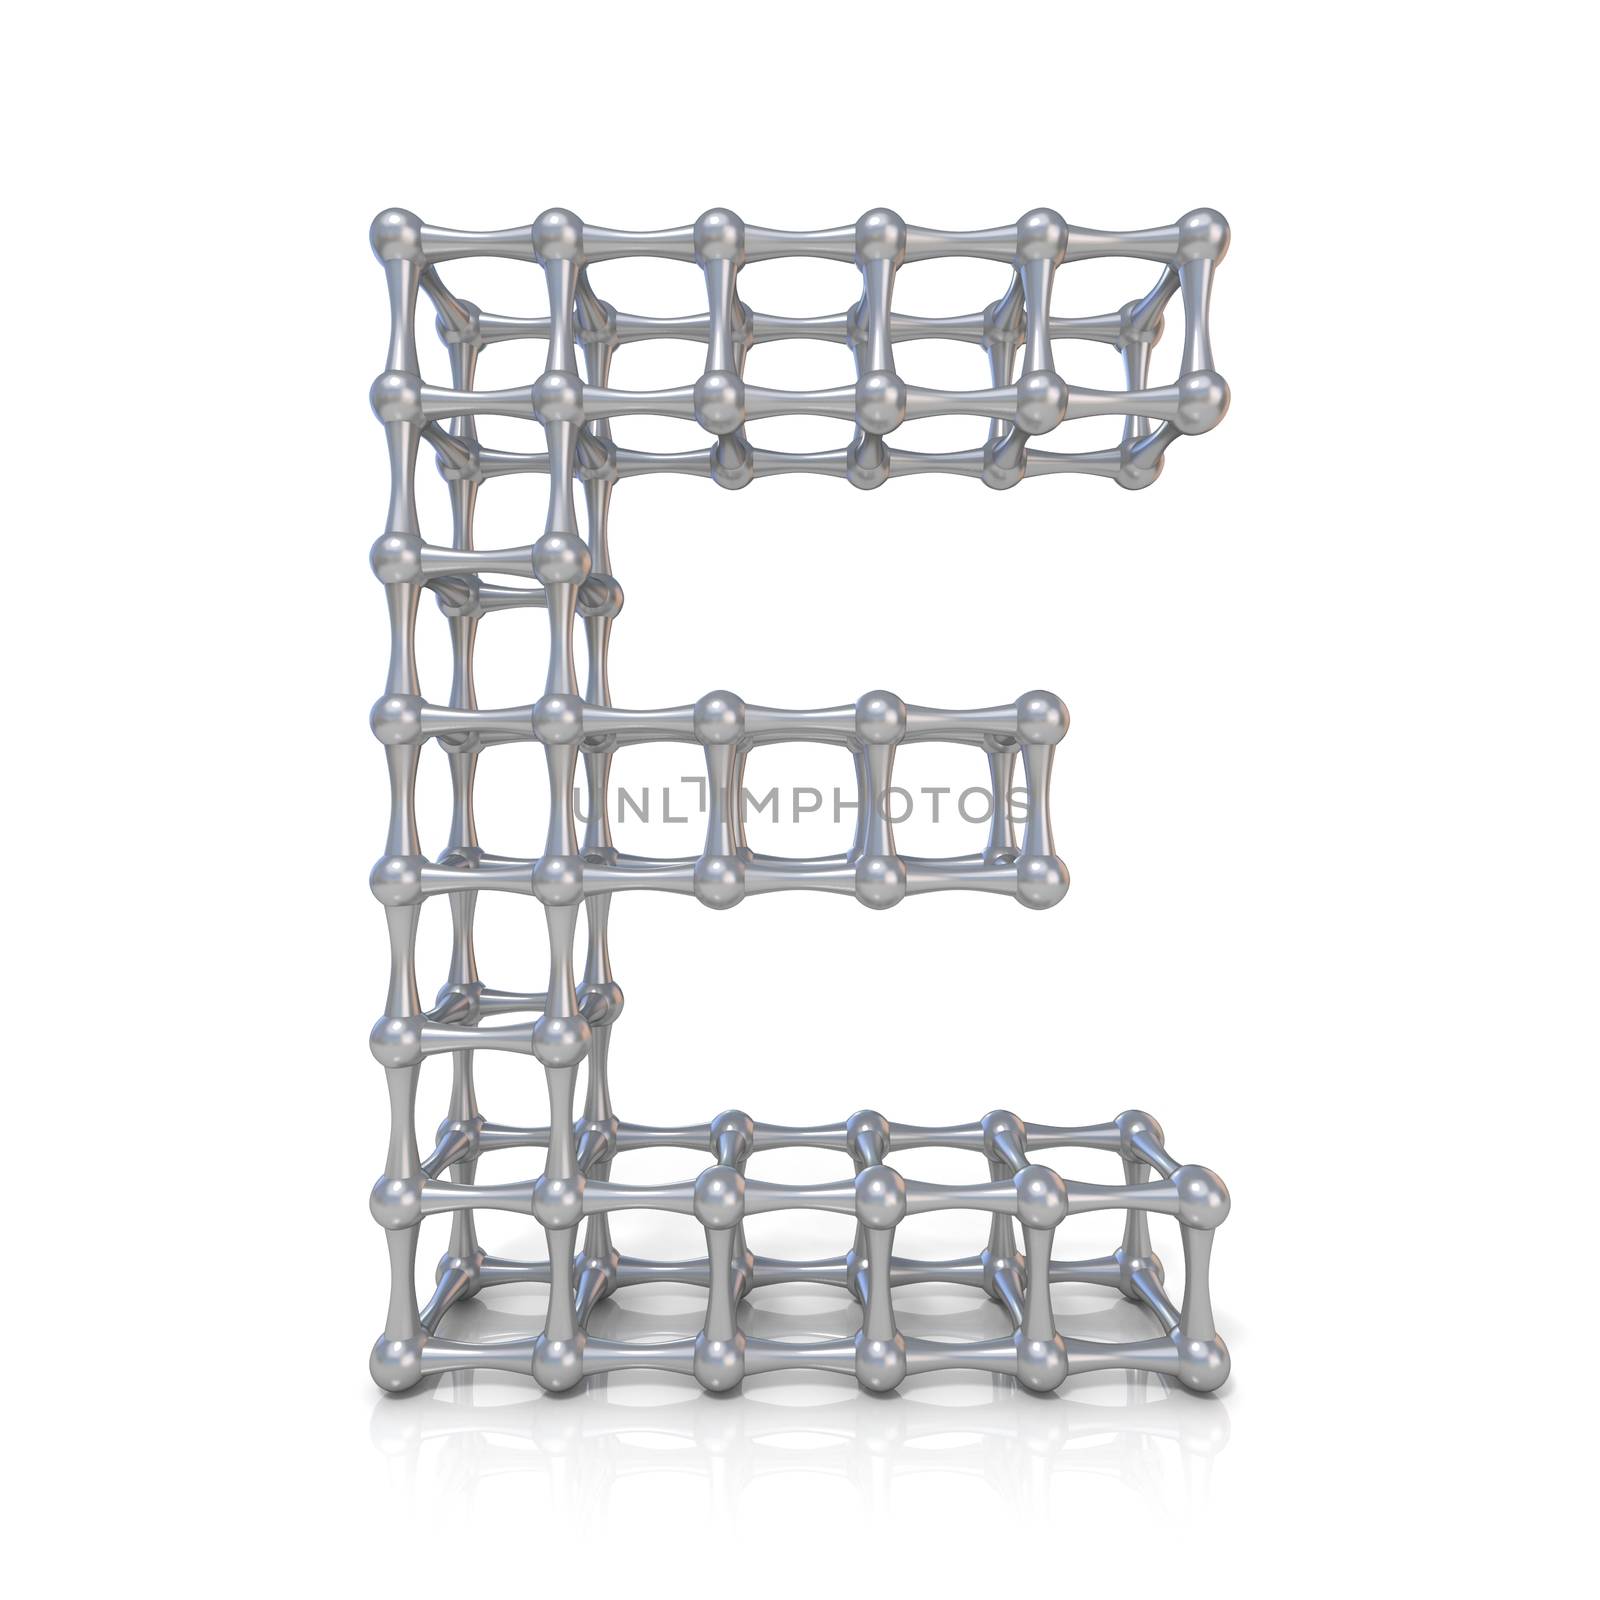 Metal lattice font letter E 3D render illustration isolated on white background